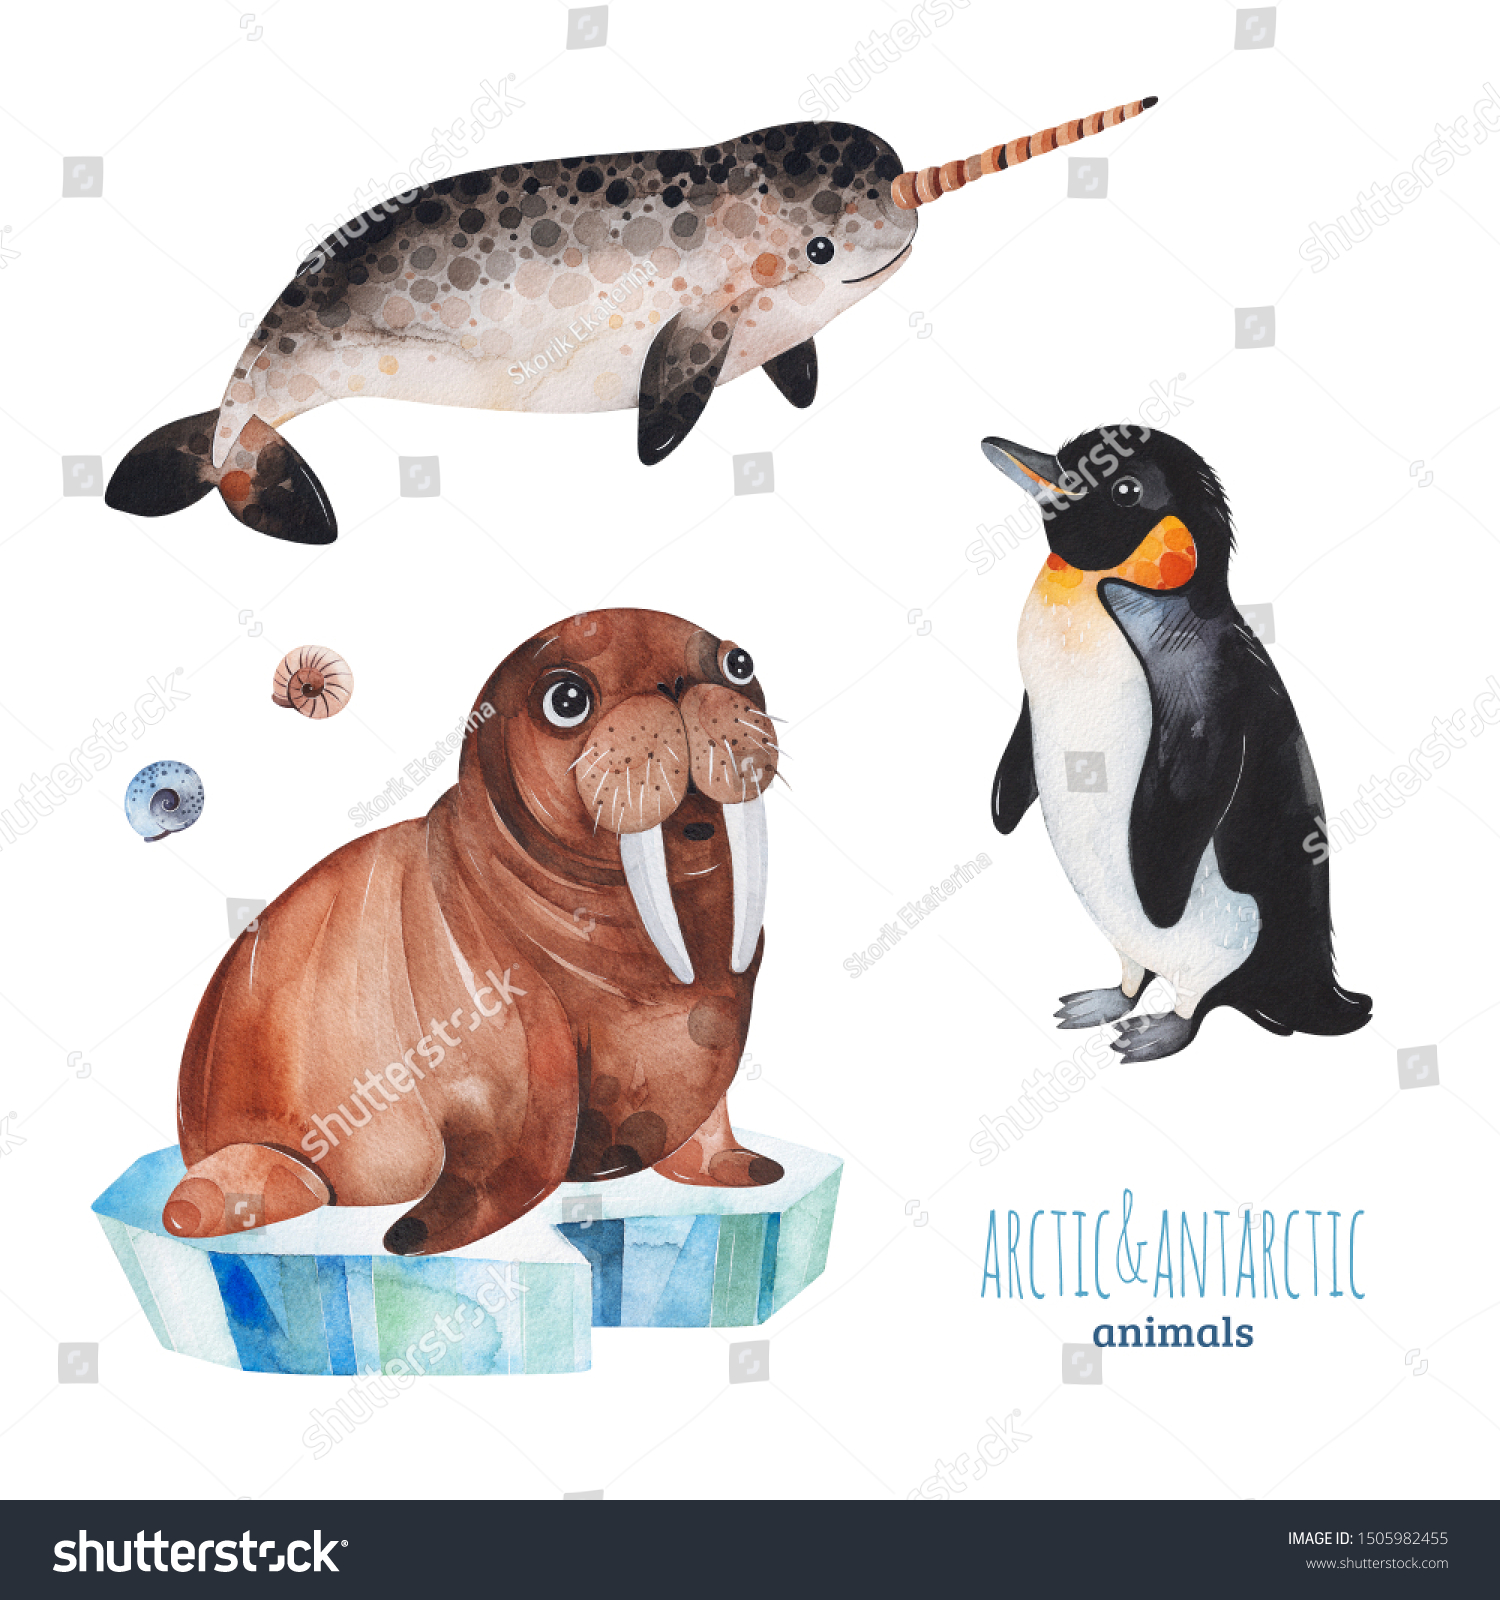 かわいいペンギン ナーホール セイウチ の北極や南極の動物を使った水彩画セット プロジェクト 印刷 スクラップブック ベビーシャワー バースデーカード 招待状 グリーティングカードなどに最適 の イラスト素材